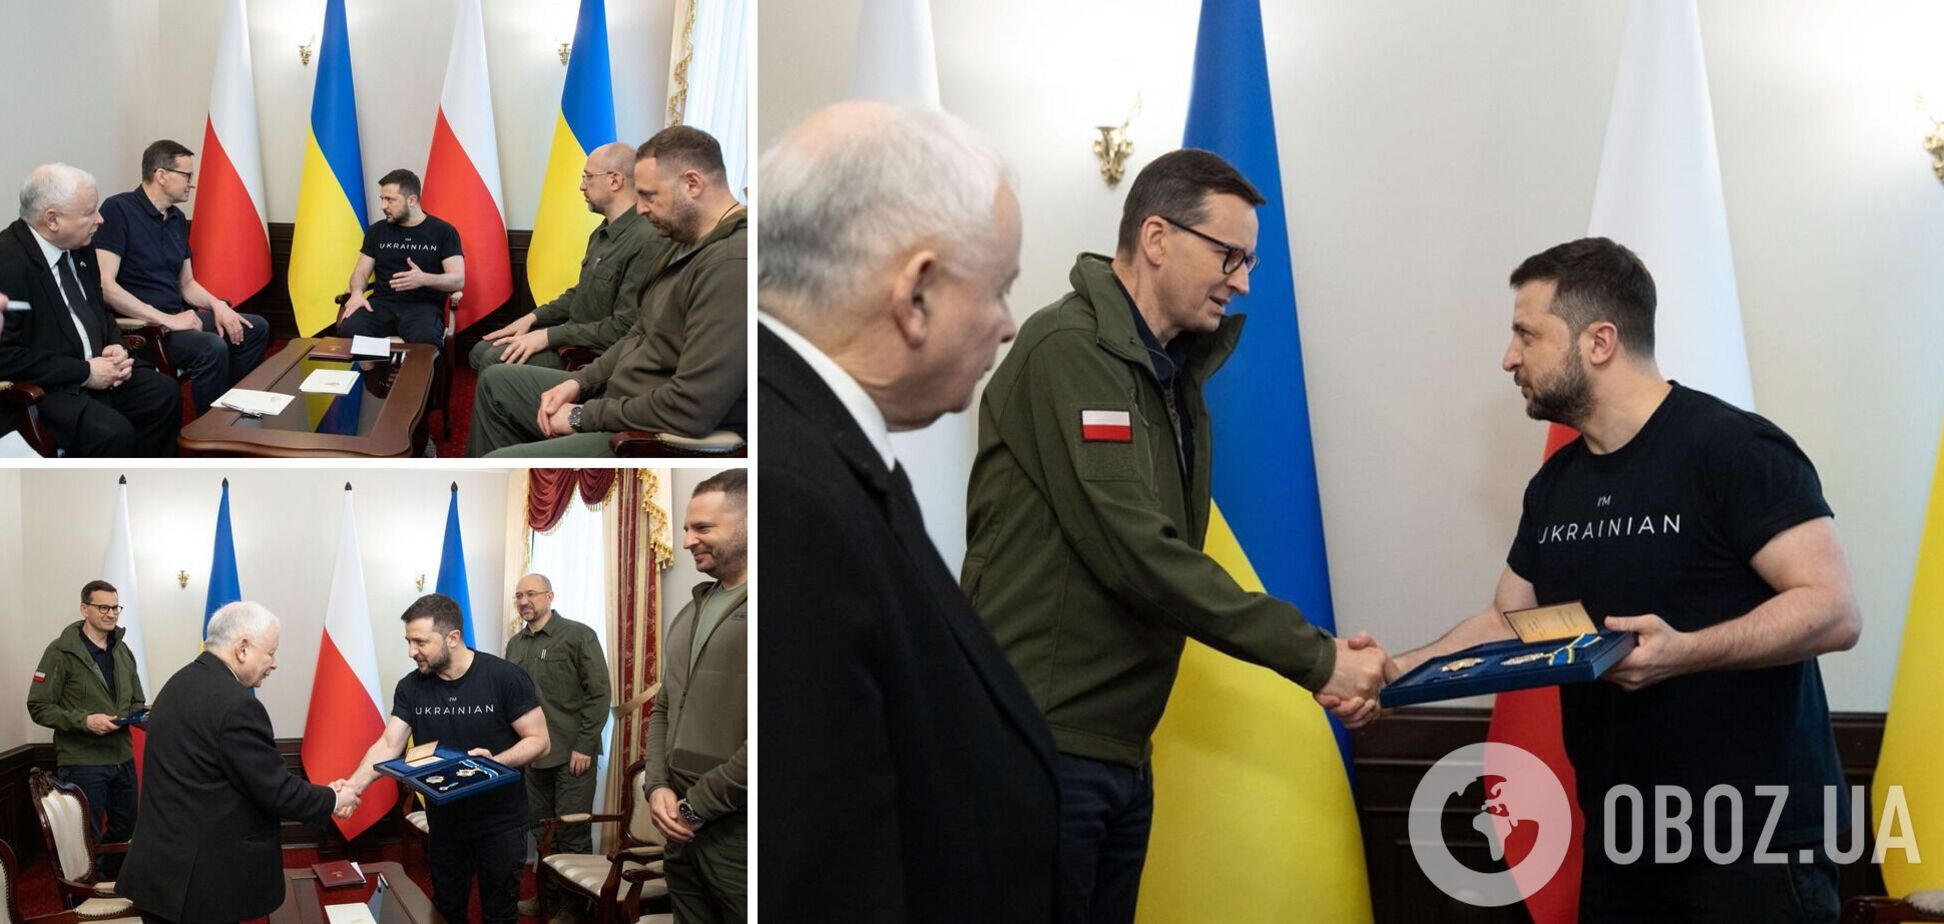 Историческое событие: Украина и Польша впервые провели межправительственные консультации. Фото